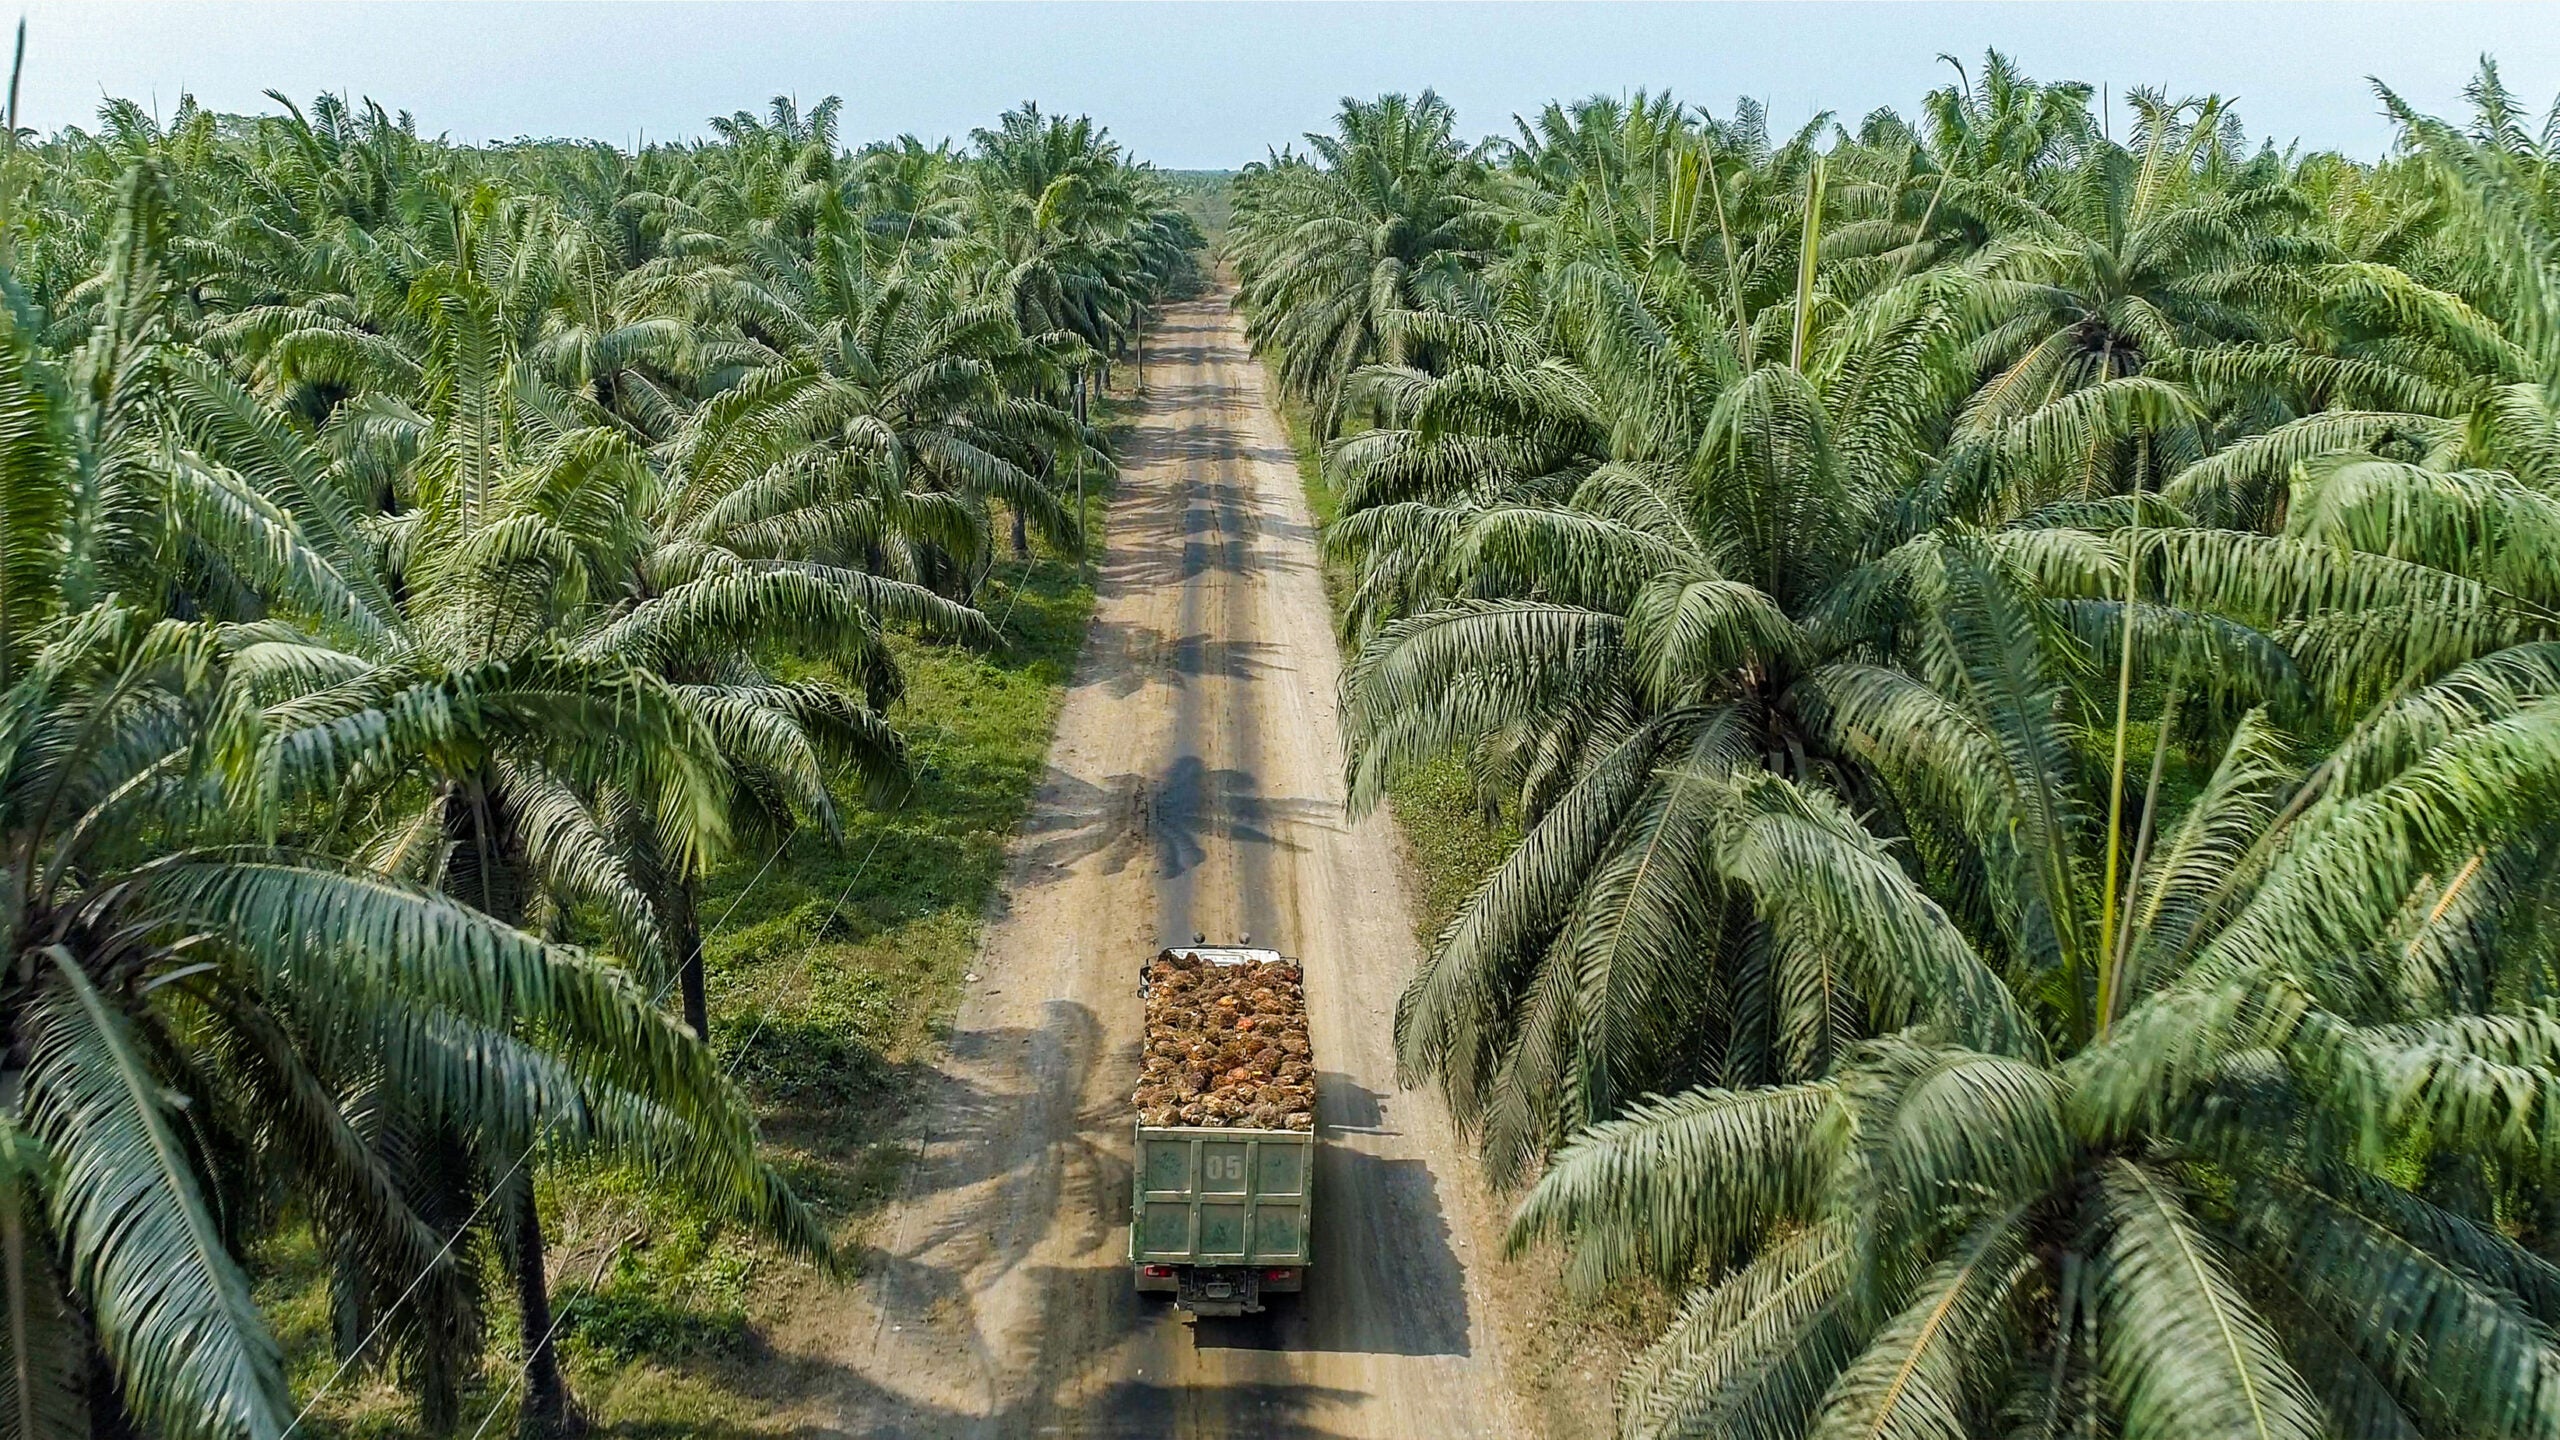 La hacienda se constituyó en la primera empresa colombiana de aceite de palma en constituir alianzas productivas con agricultores vecinos, dando asistencia técnica, social y ambiental